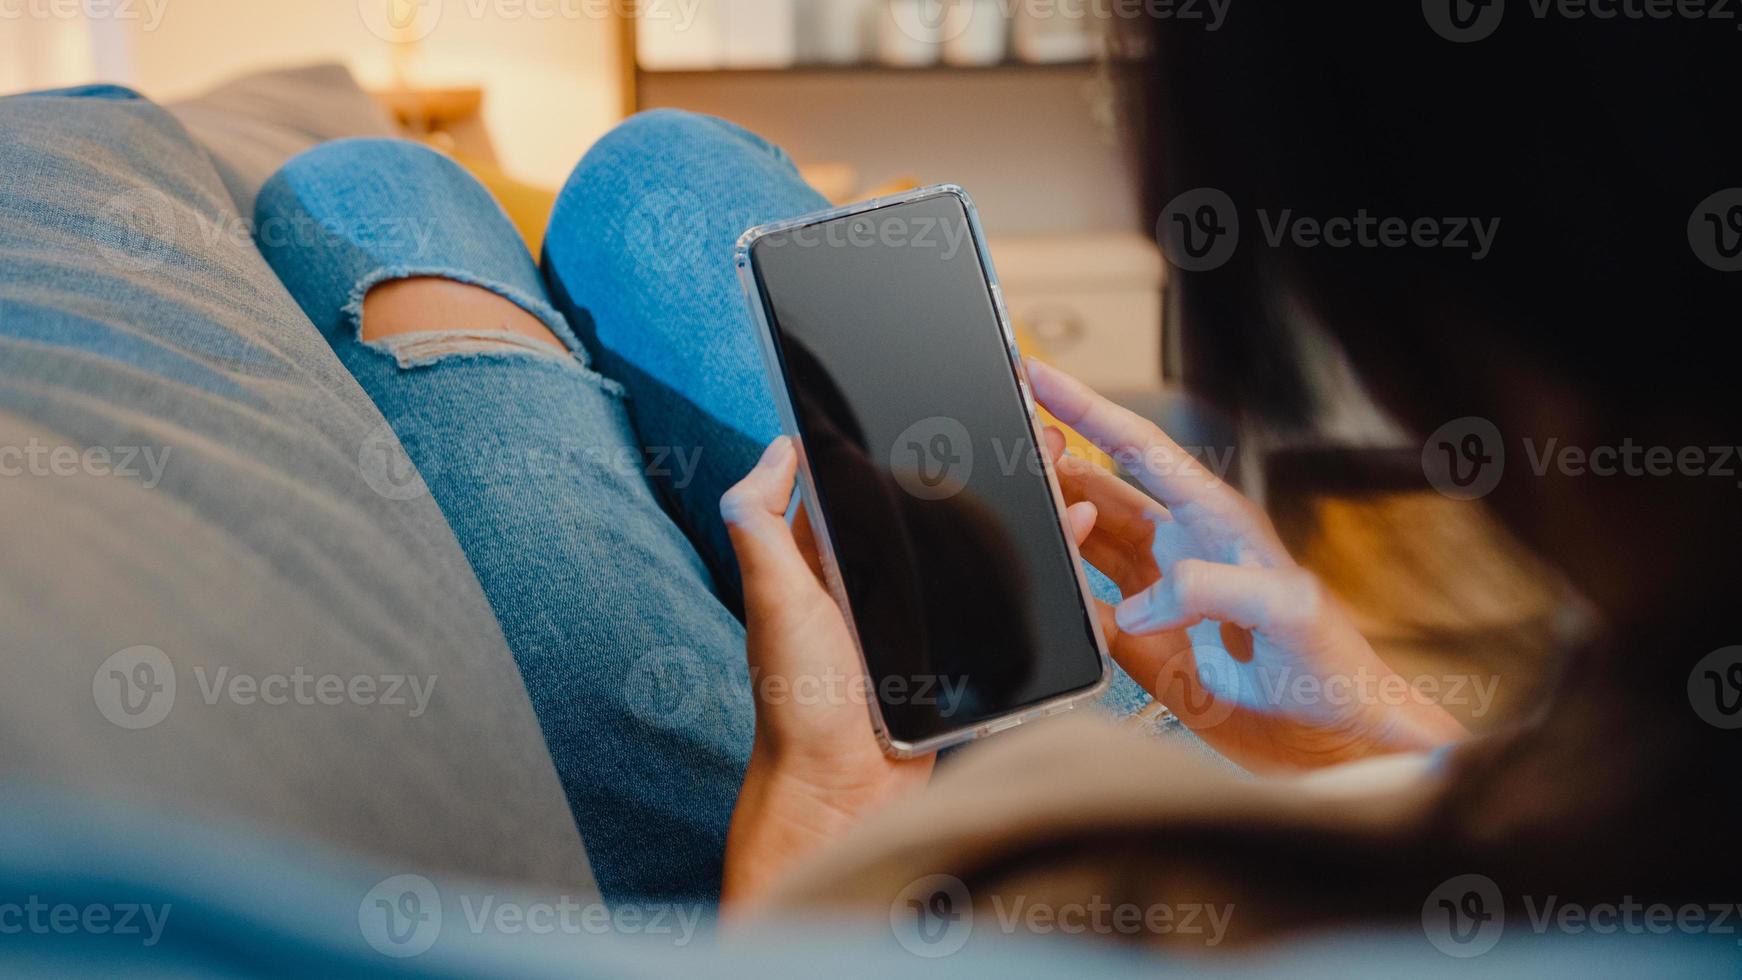 junge asiatische Dame verwendet Smartphone mit leerem schwarzem Bildschirm für Werbetexte, während sie sich in der modernen Heimnacht auf der Couch im Wohnzimmer ausruht. Chroma-Key-Technologie, Marketing-Design-Konzept. foto